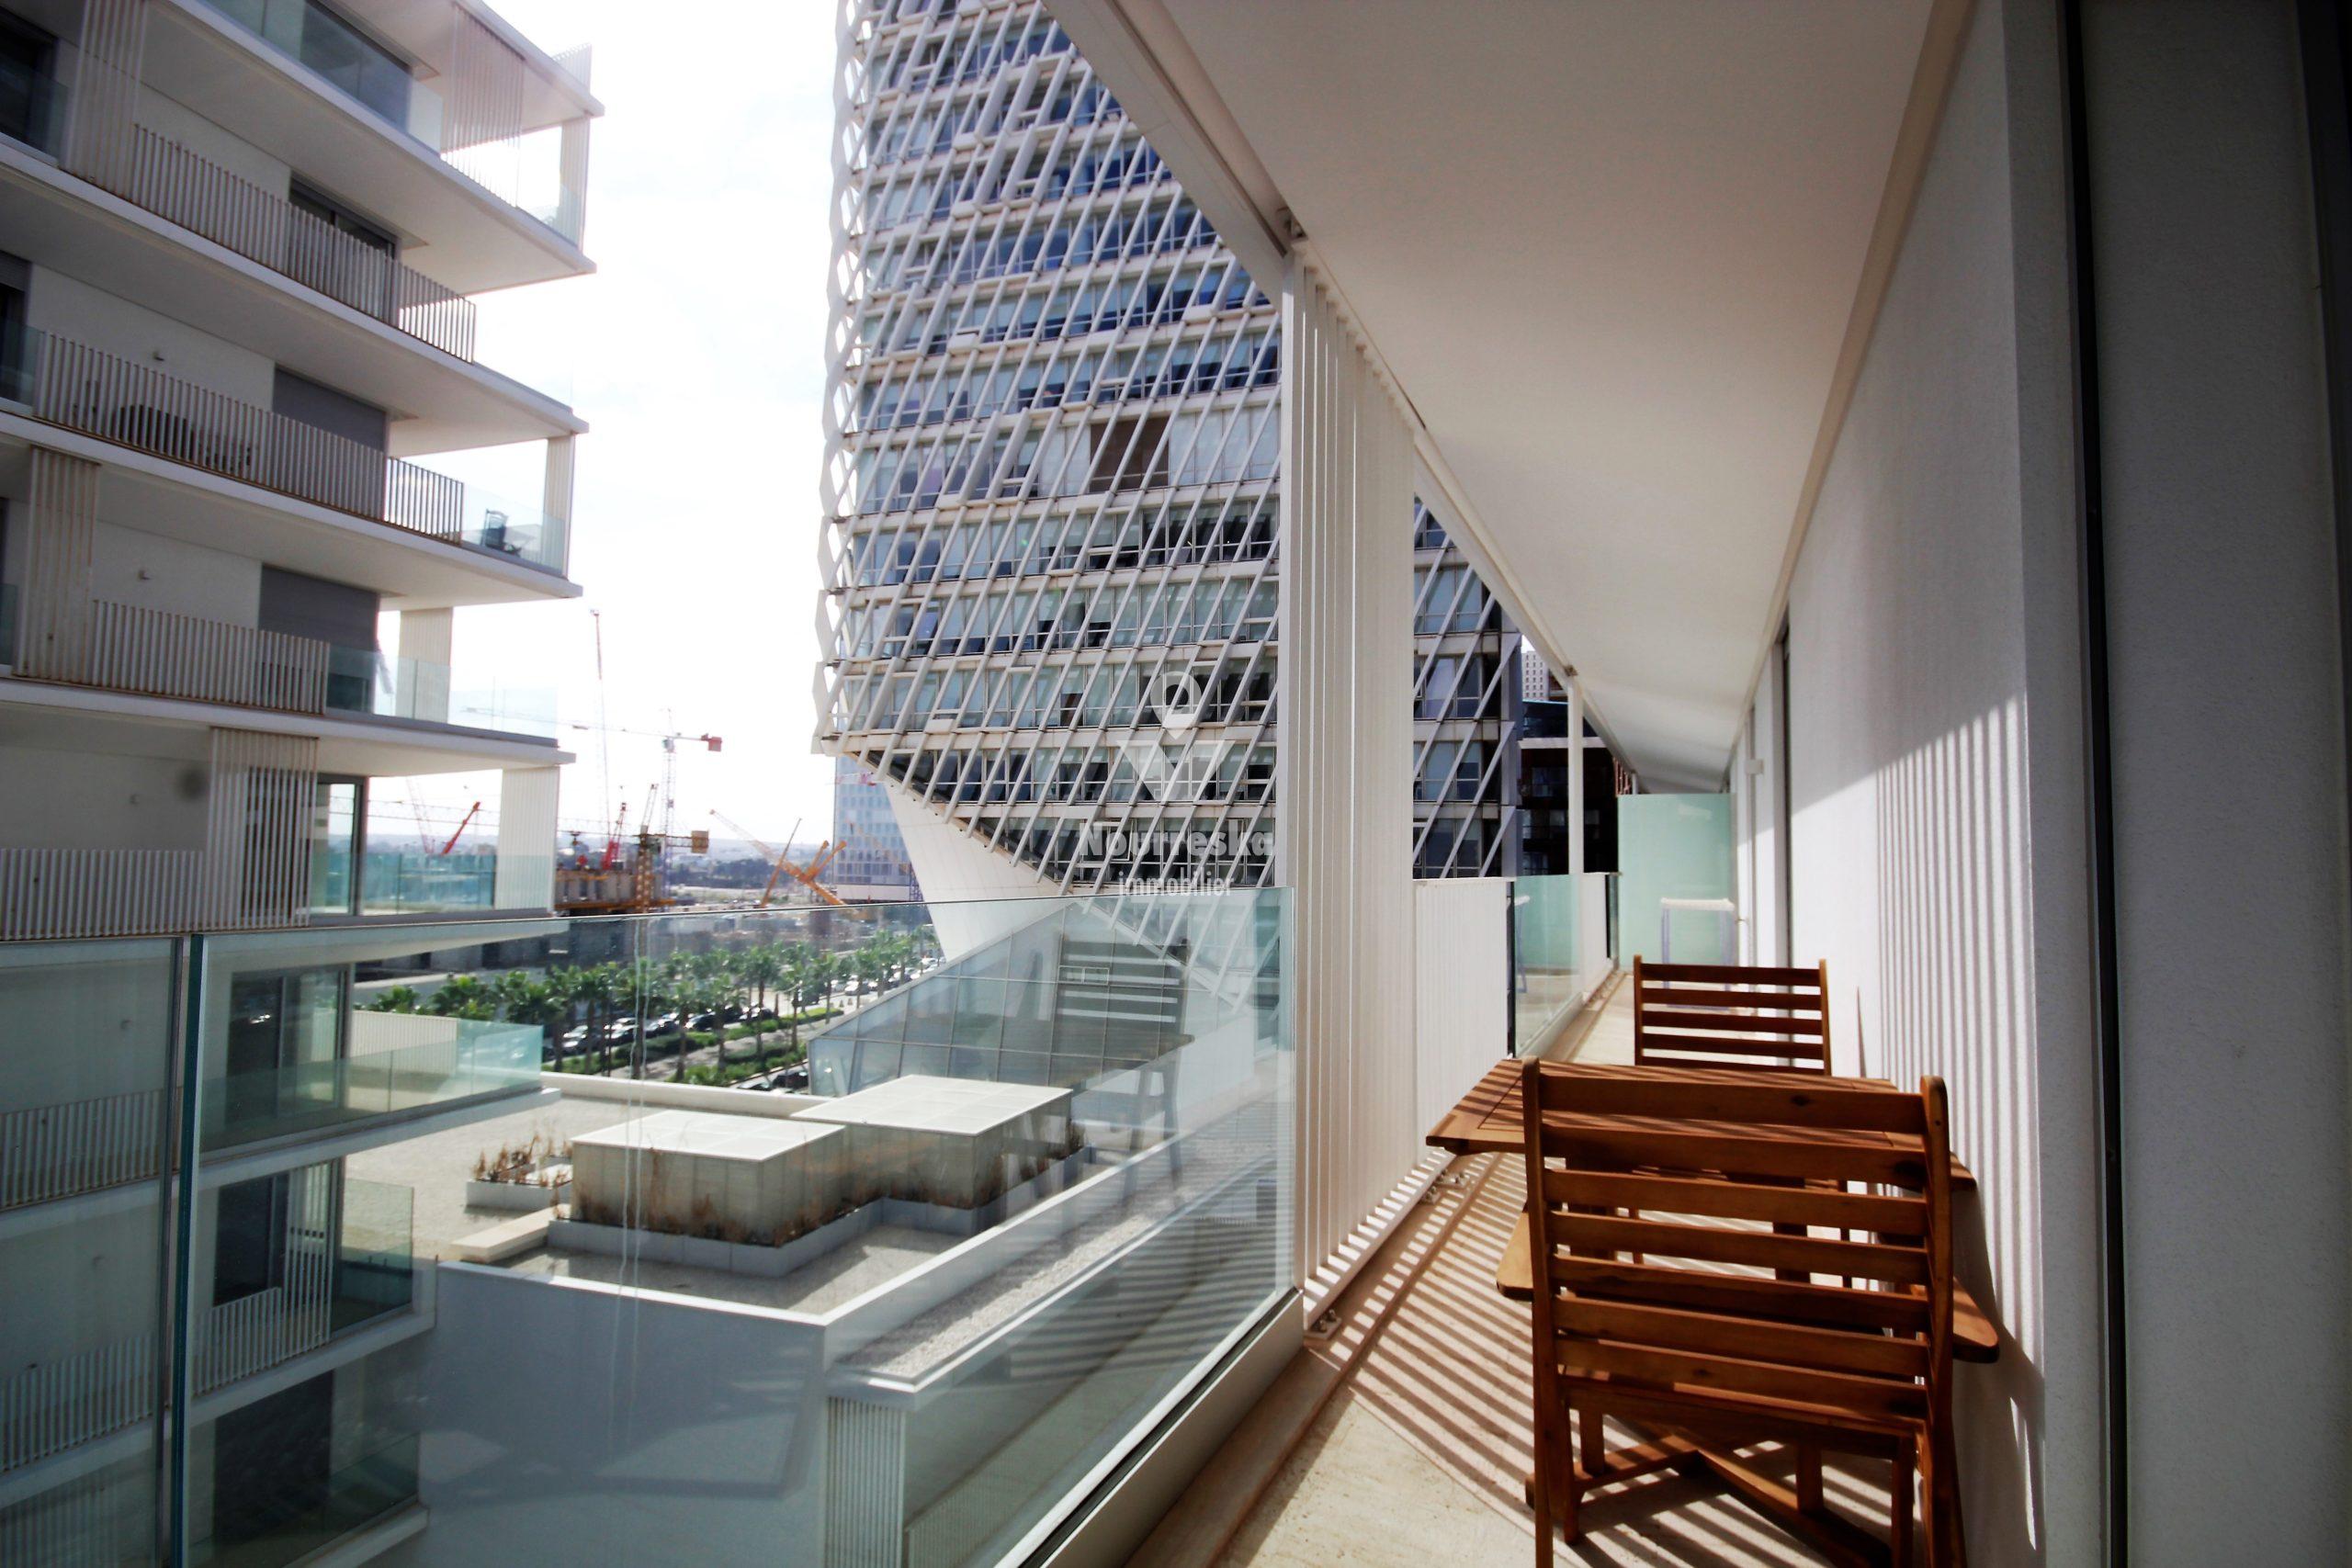 Casa finance city loue logement meublé de 106 m2 dont 26 m2 de terrasse